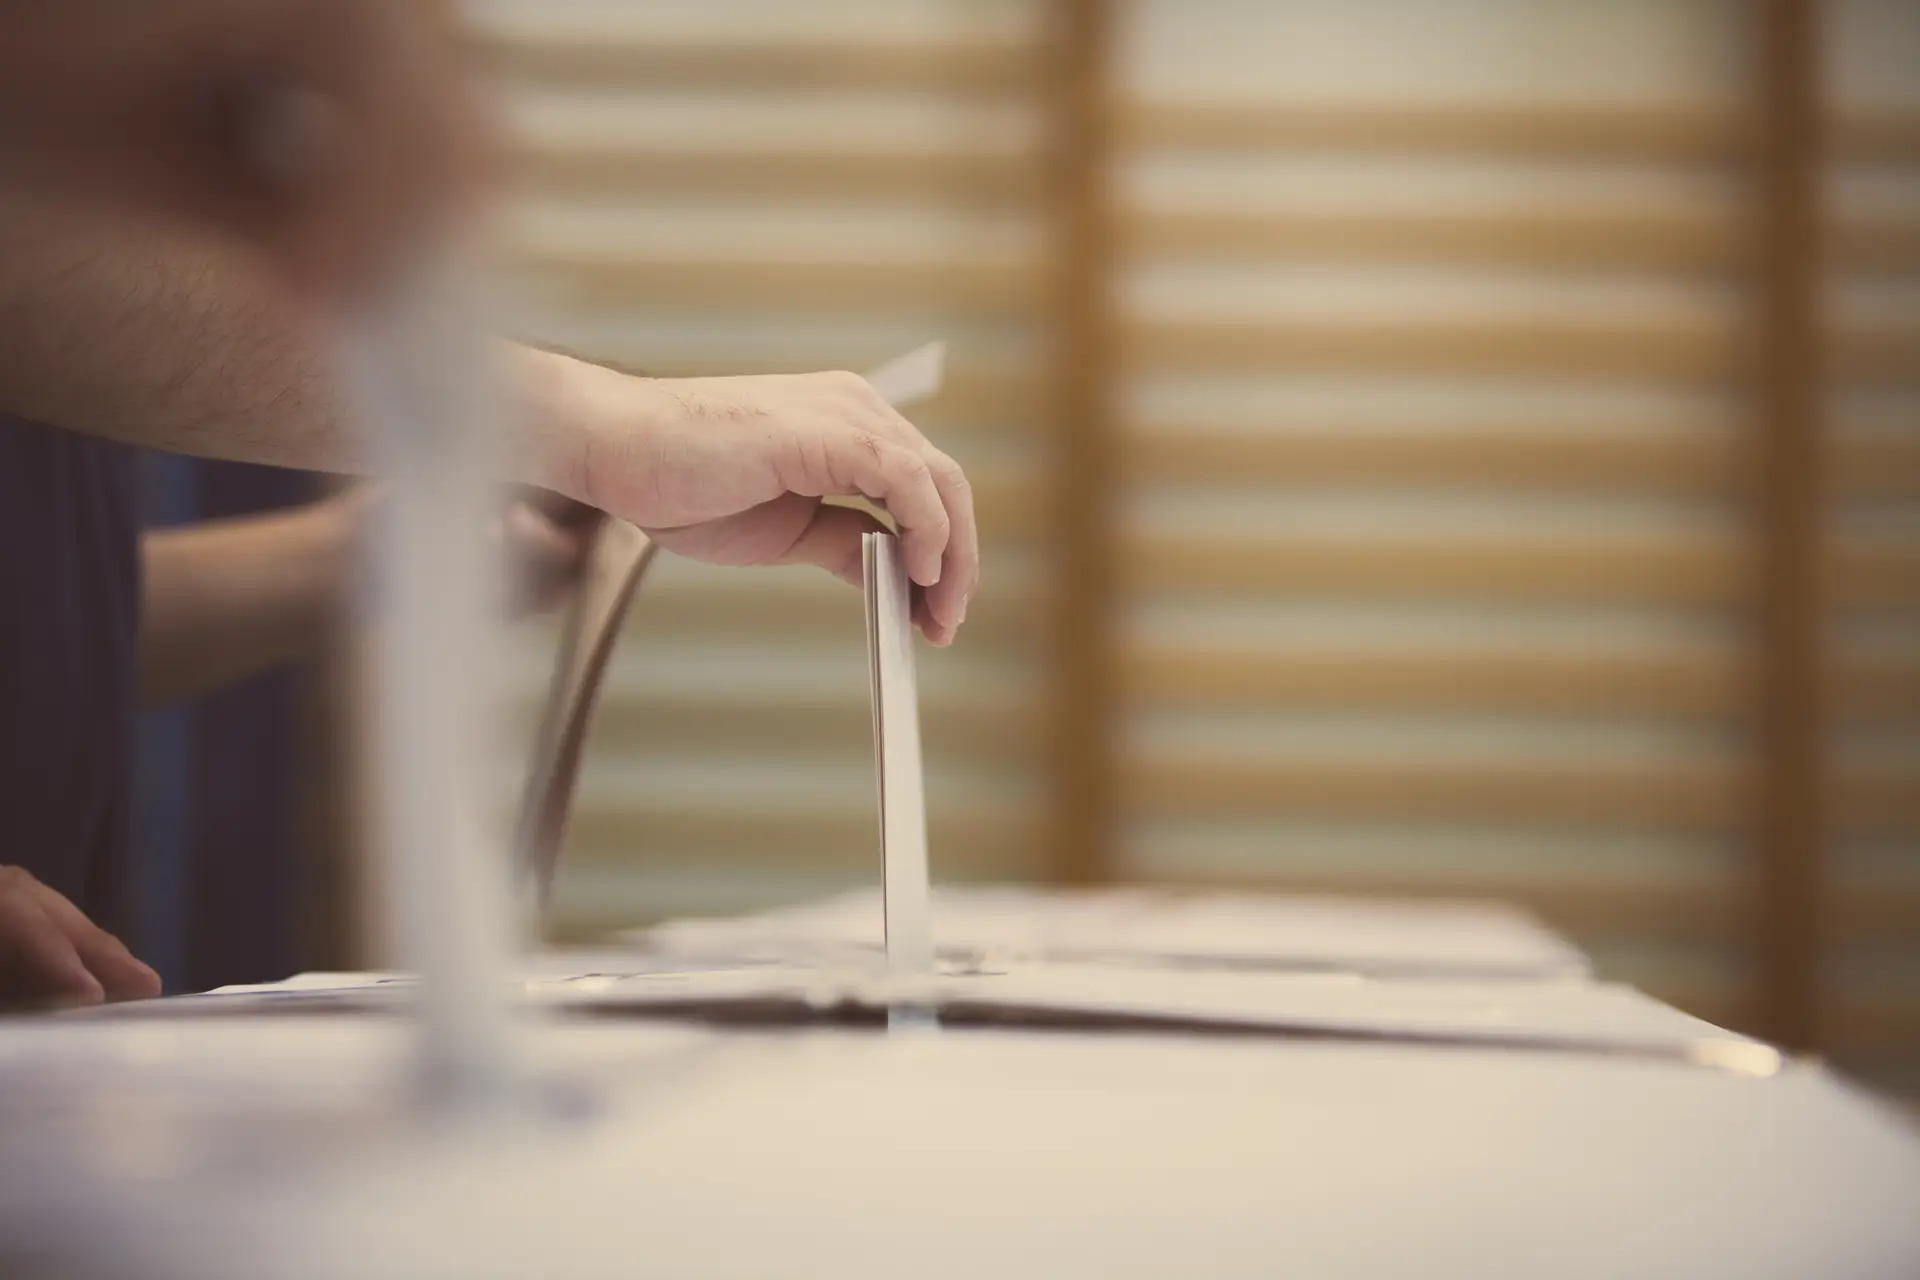 País Basco vai a votos com independentistas a disputarem vitória pela primeira vez